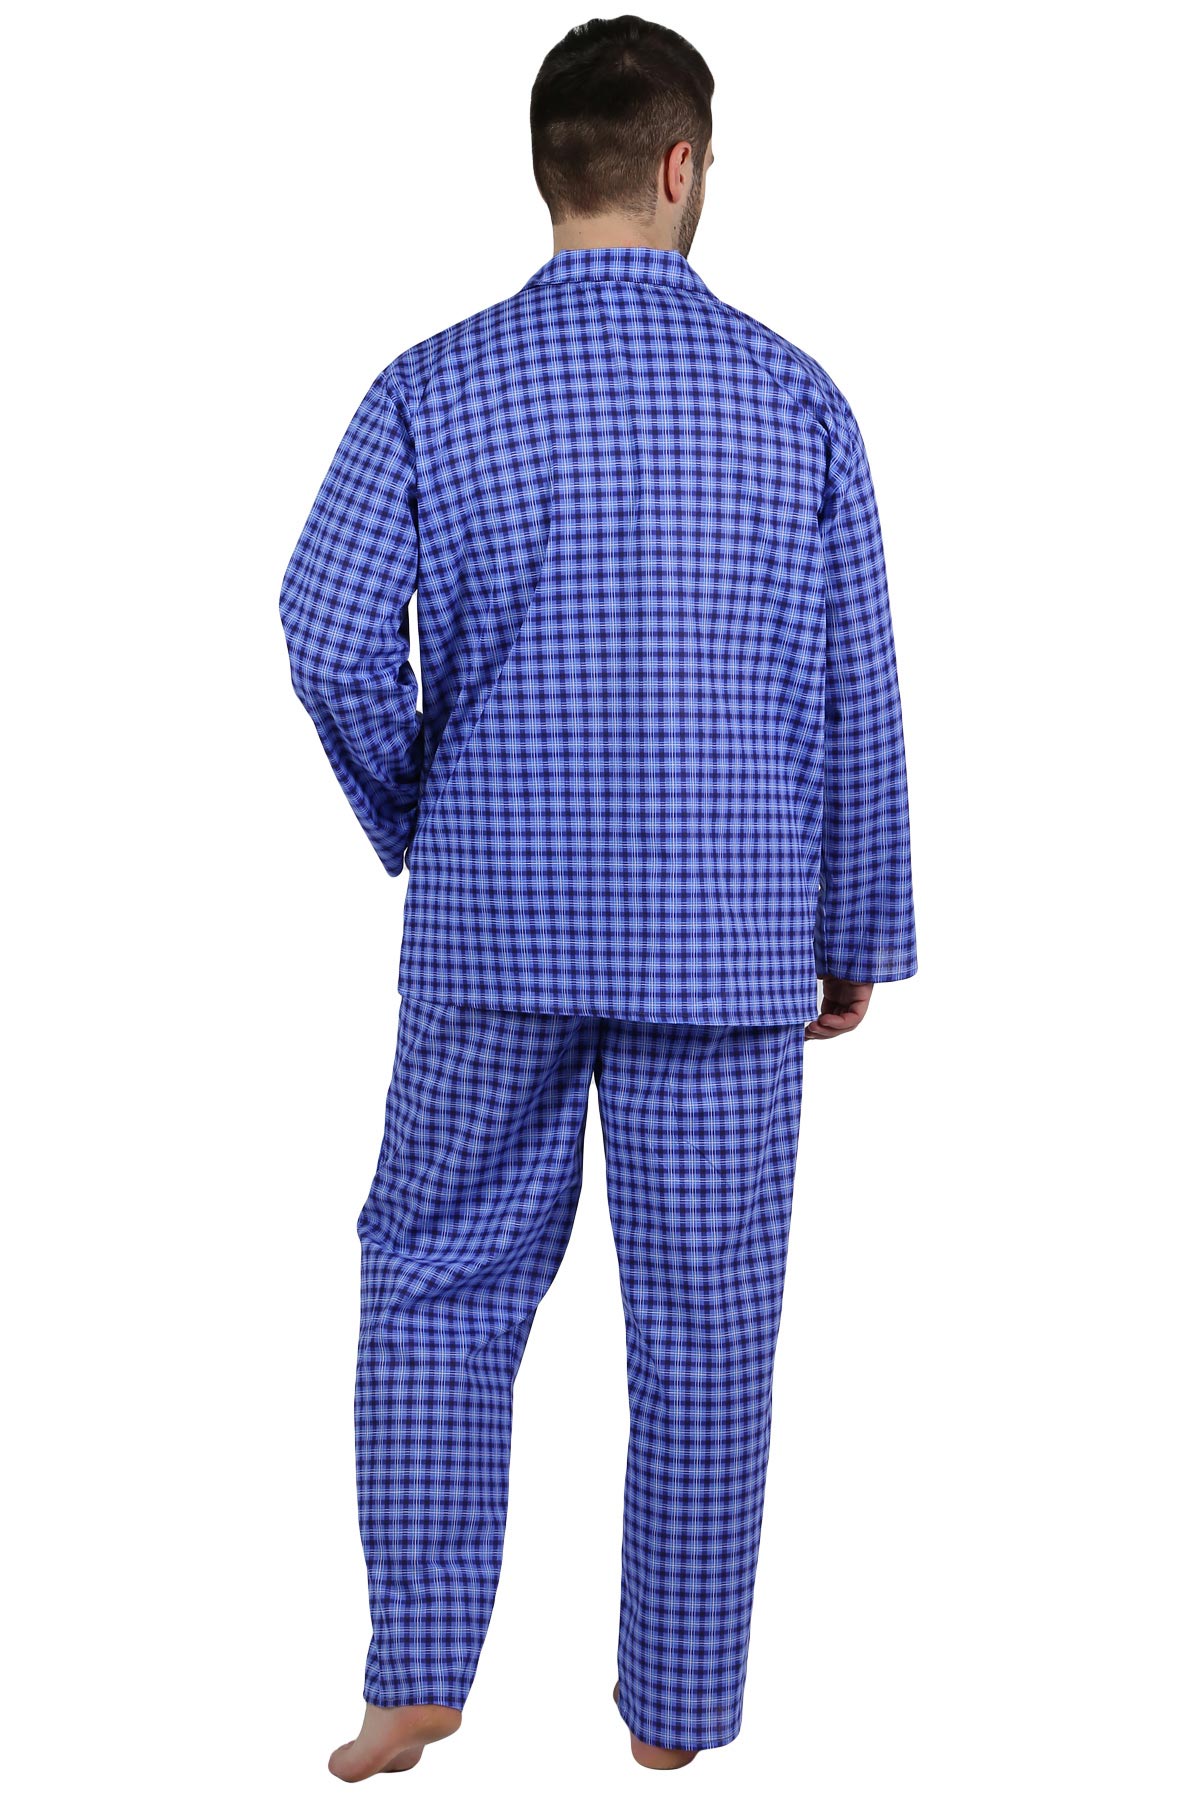 Муж. пижама арт. 22-0210 В ассортименте р. 52 Оптима трикотаж, размер 52 - фото 3